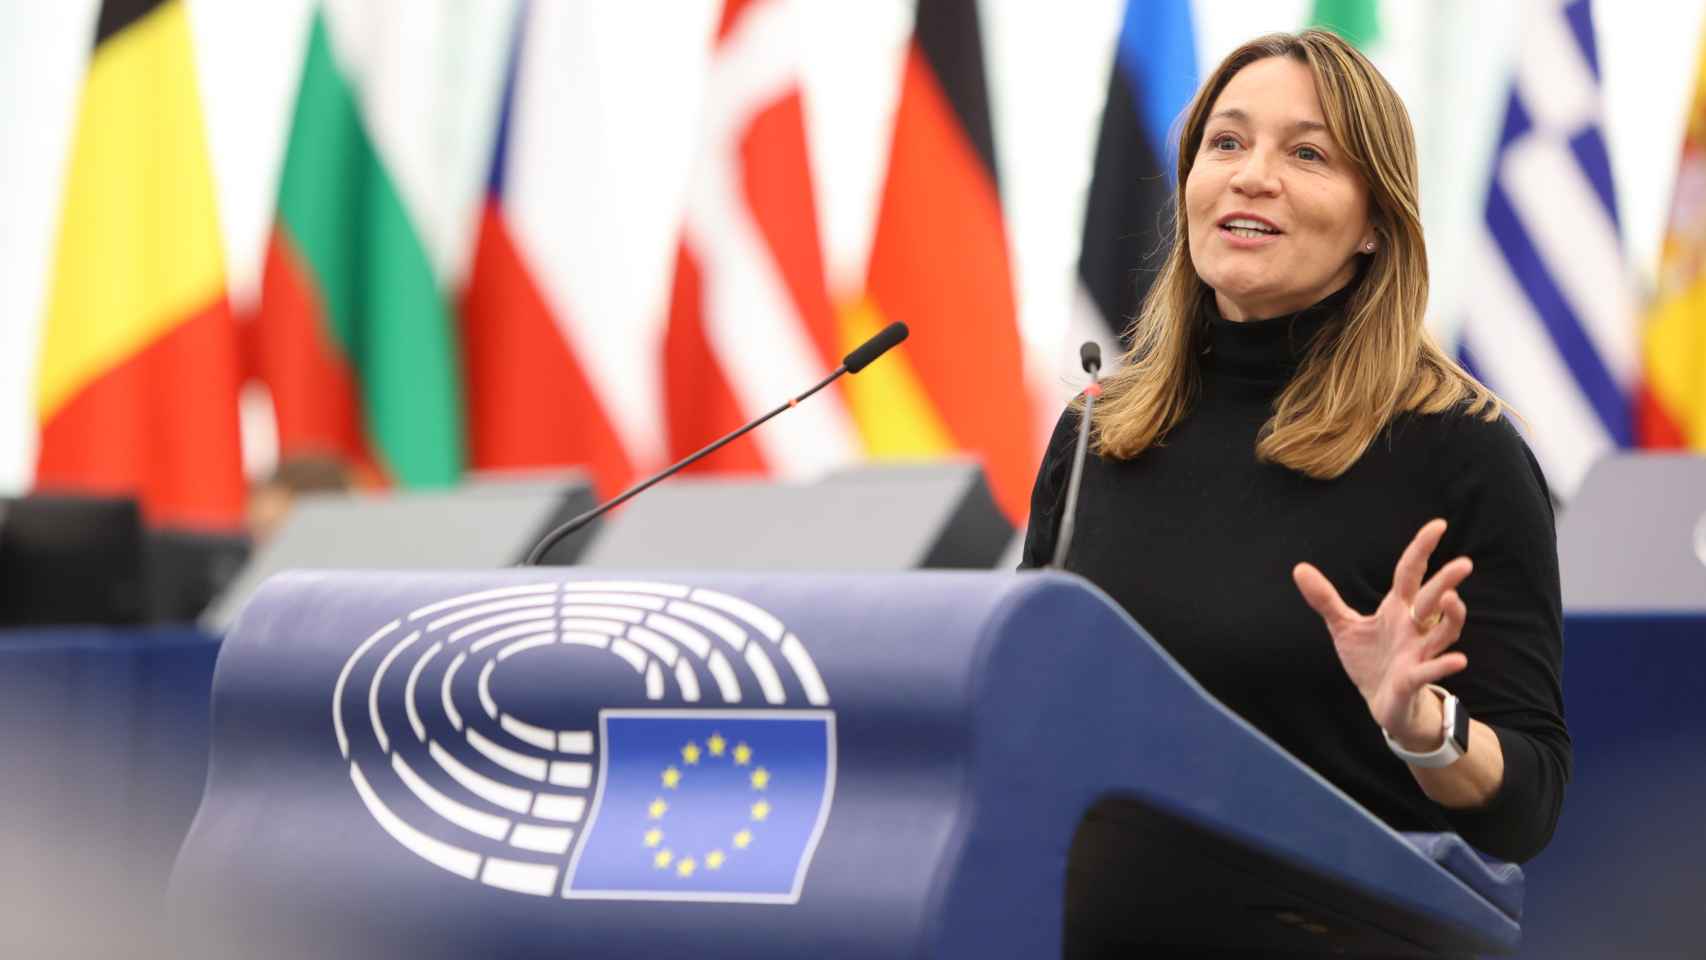 Susana Solís es eurodiputada por Ciudadanos en el grupo parlamentario europeo Renew Europe